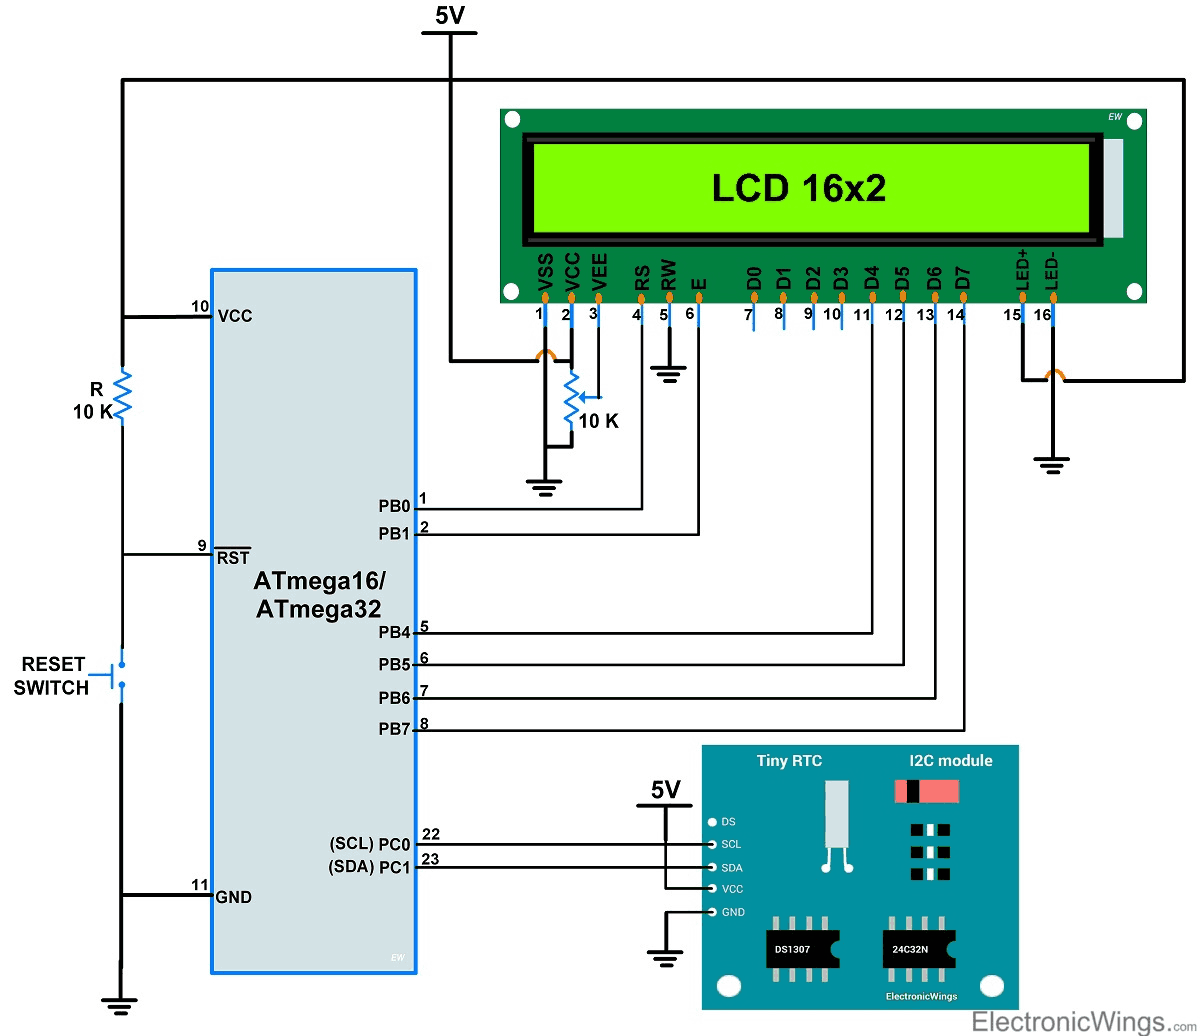 ATmega16 RTC interface